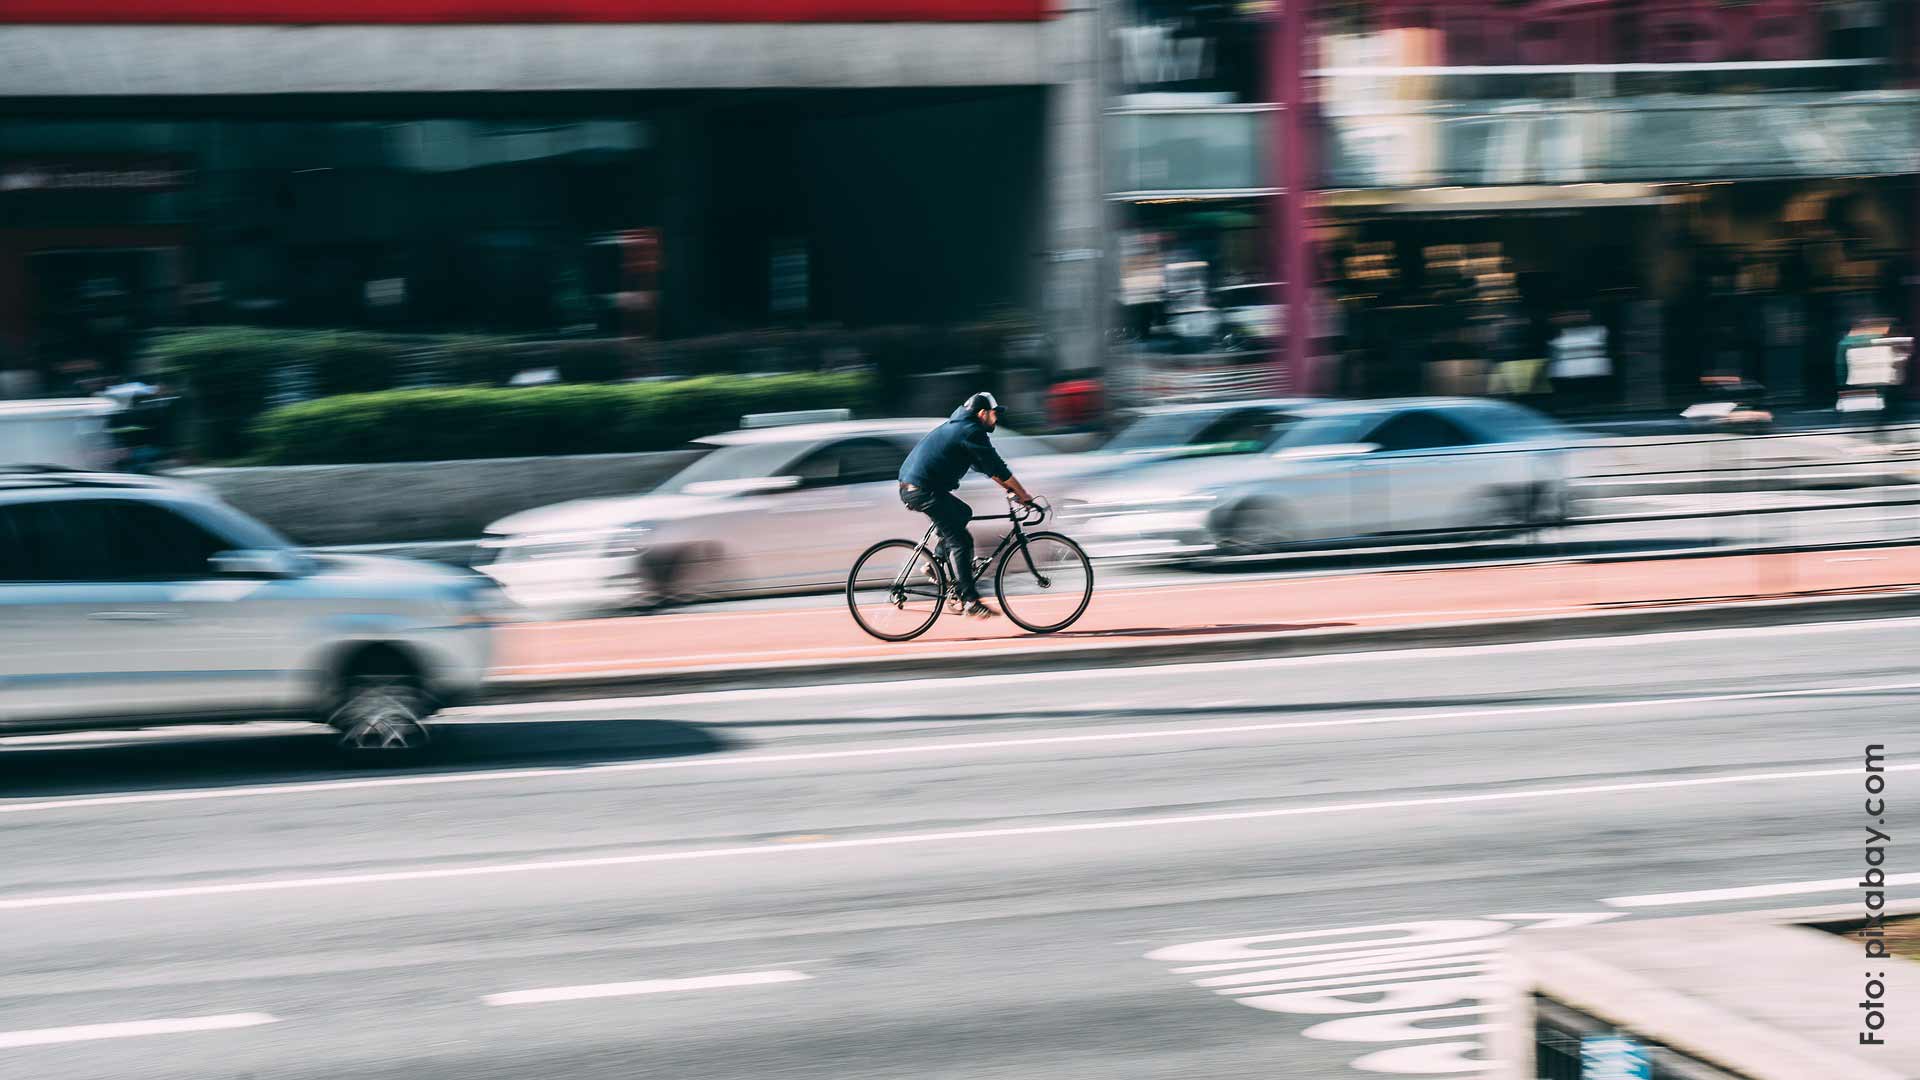 Radfahrer im Straßenverkehr